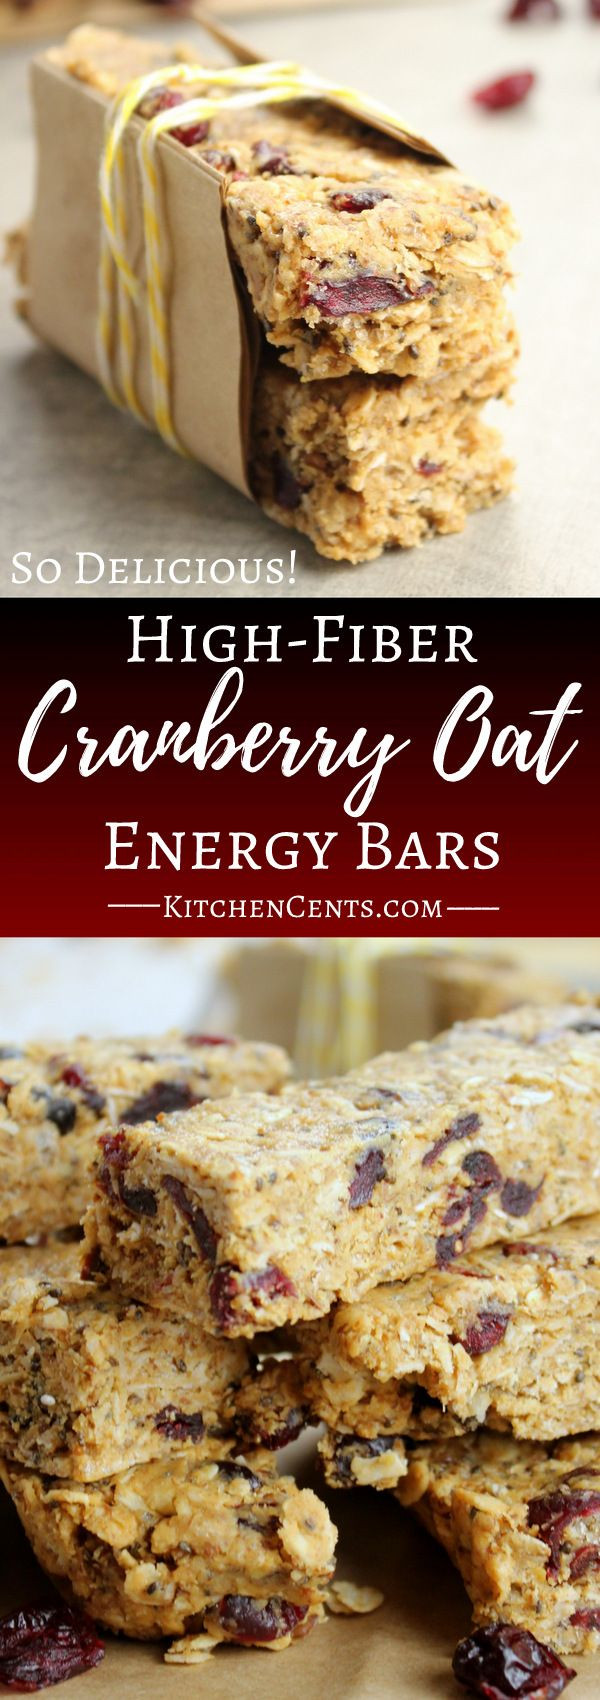 High Fiber Bars Recipes
 High Fiber Cranberry Oat Energy Granola Bars